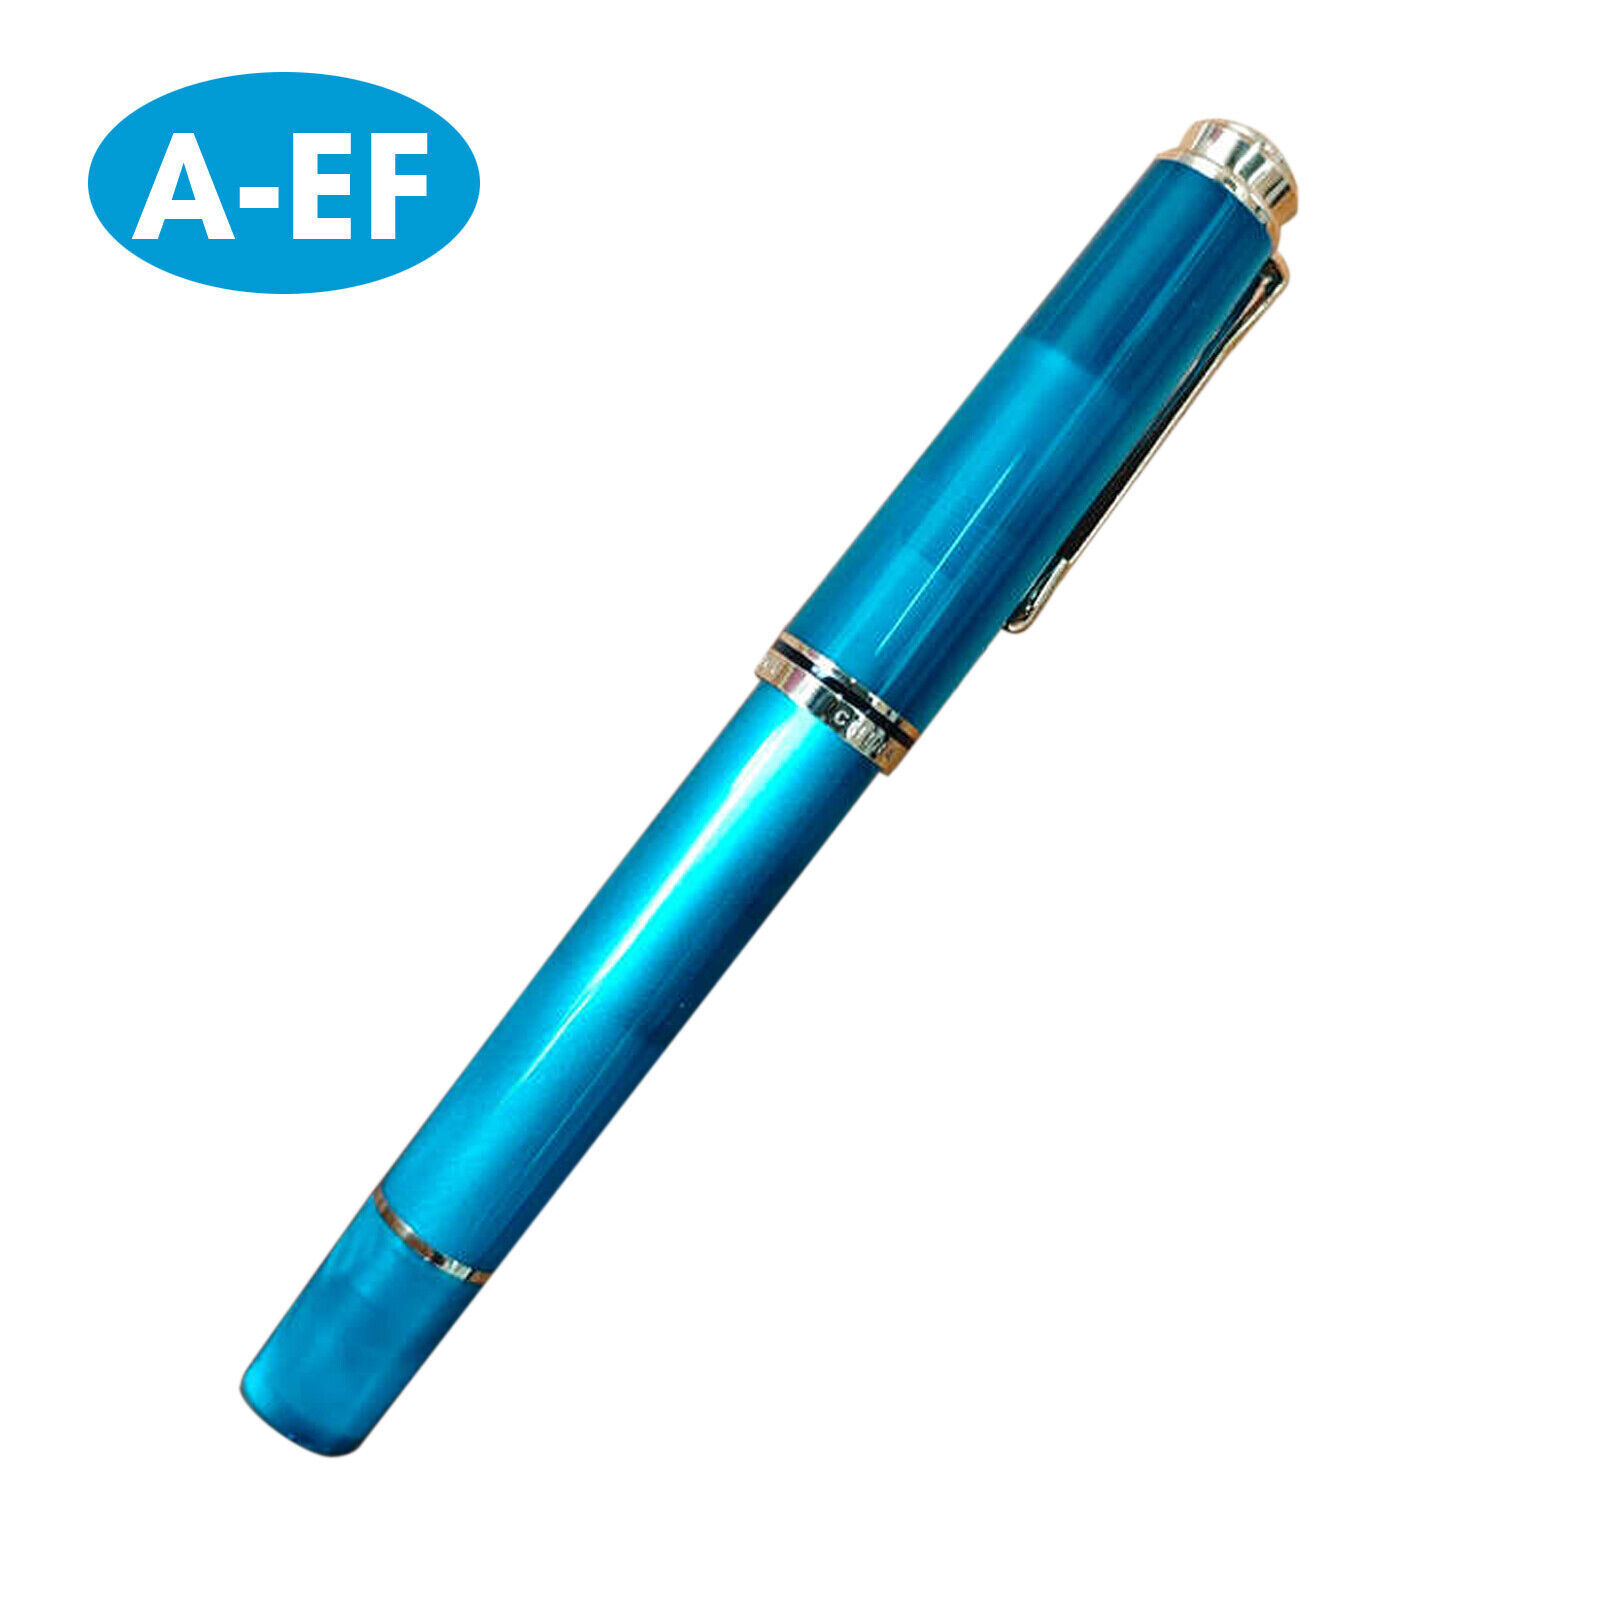 ADMOK 400 Acrylic Piston Fountain Pen Schmidt Soft Smooth #5 Nib EF/F/M NibM6T9y